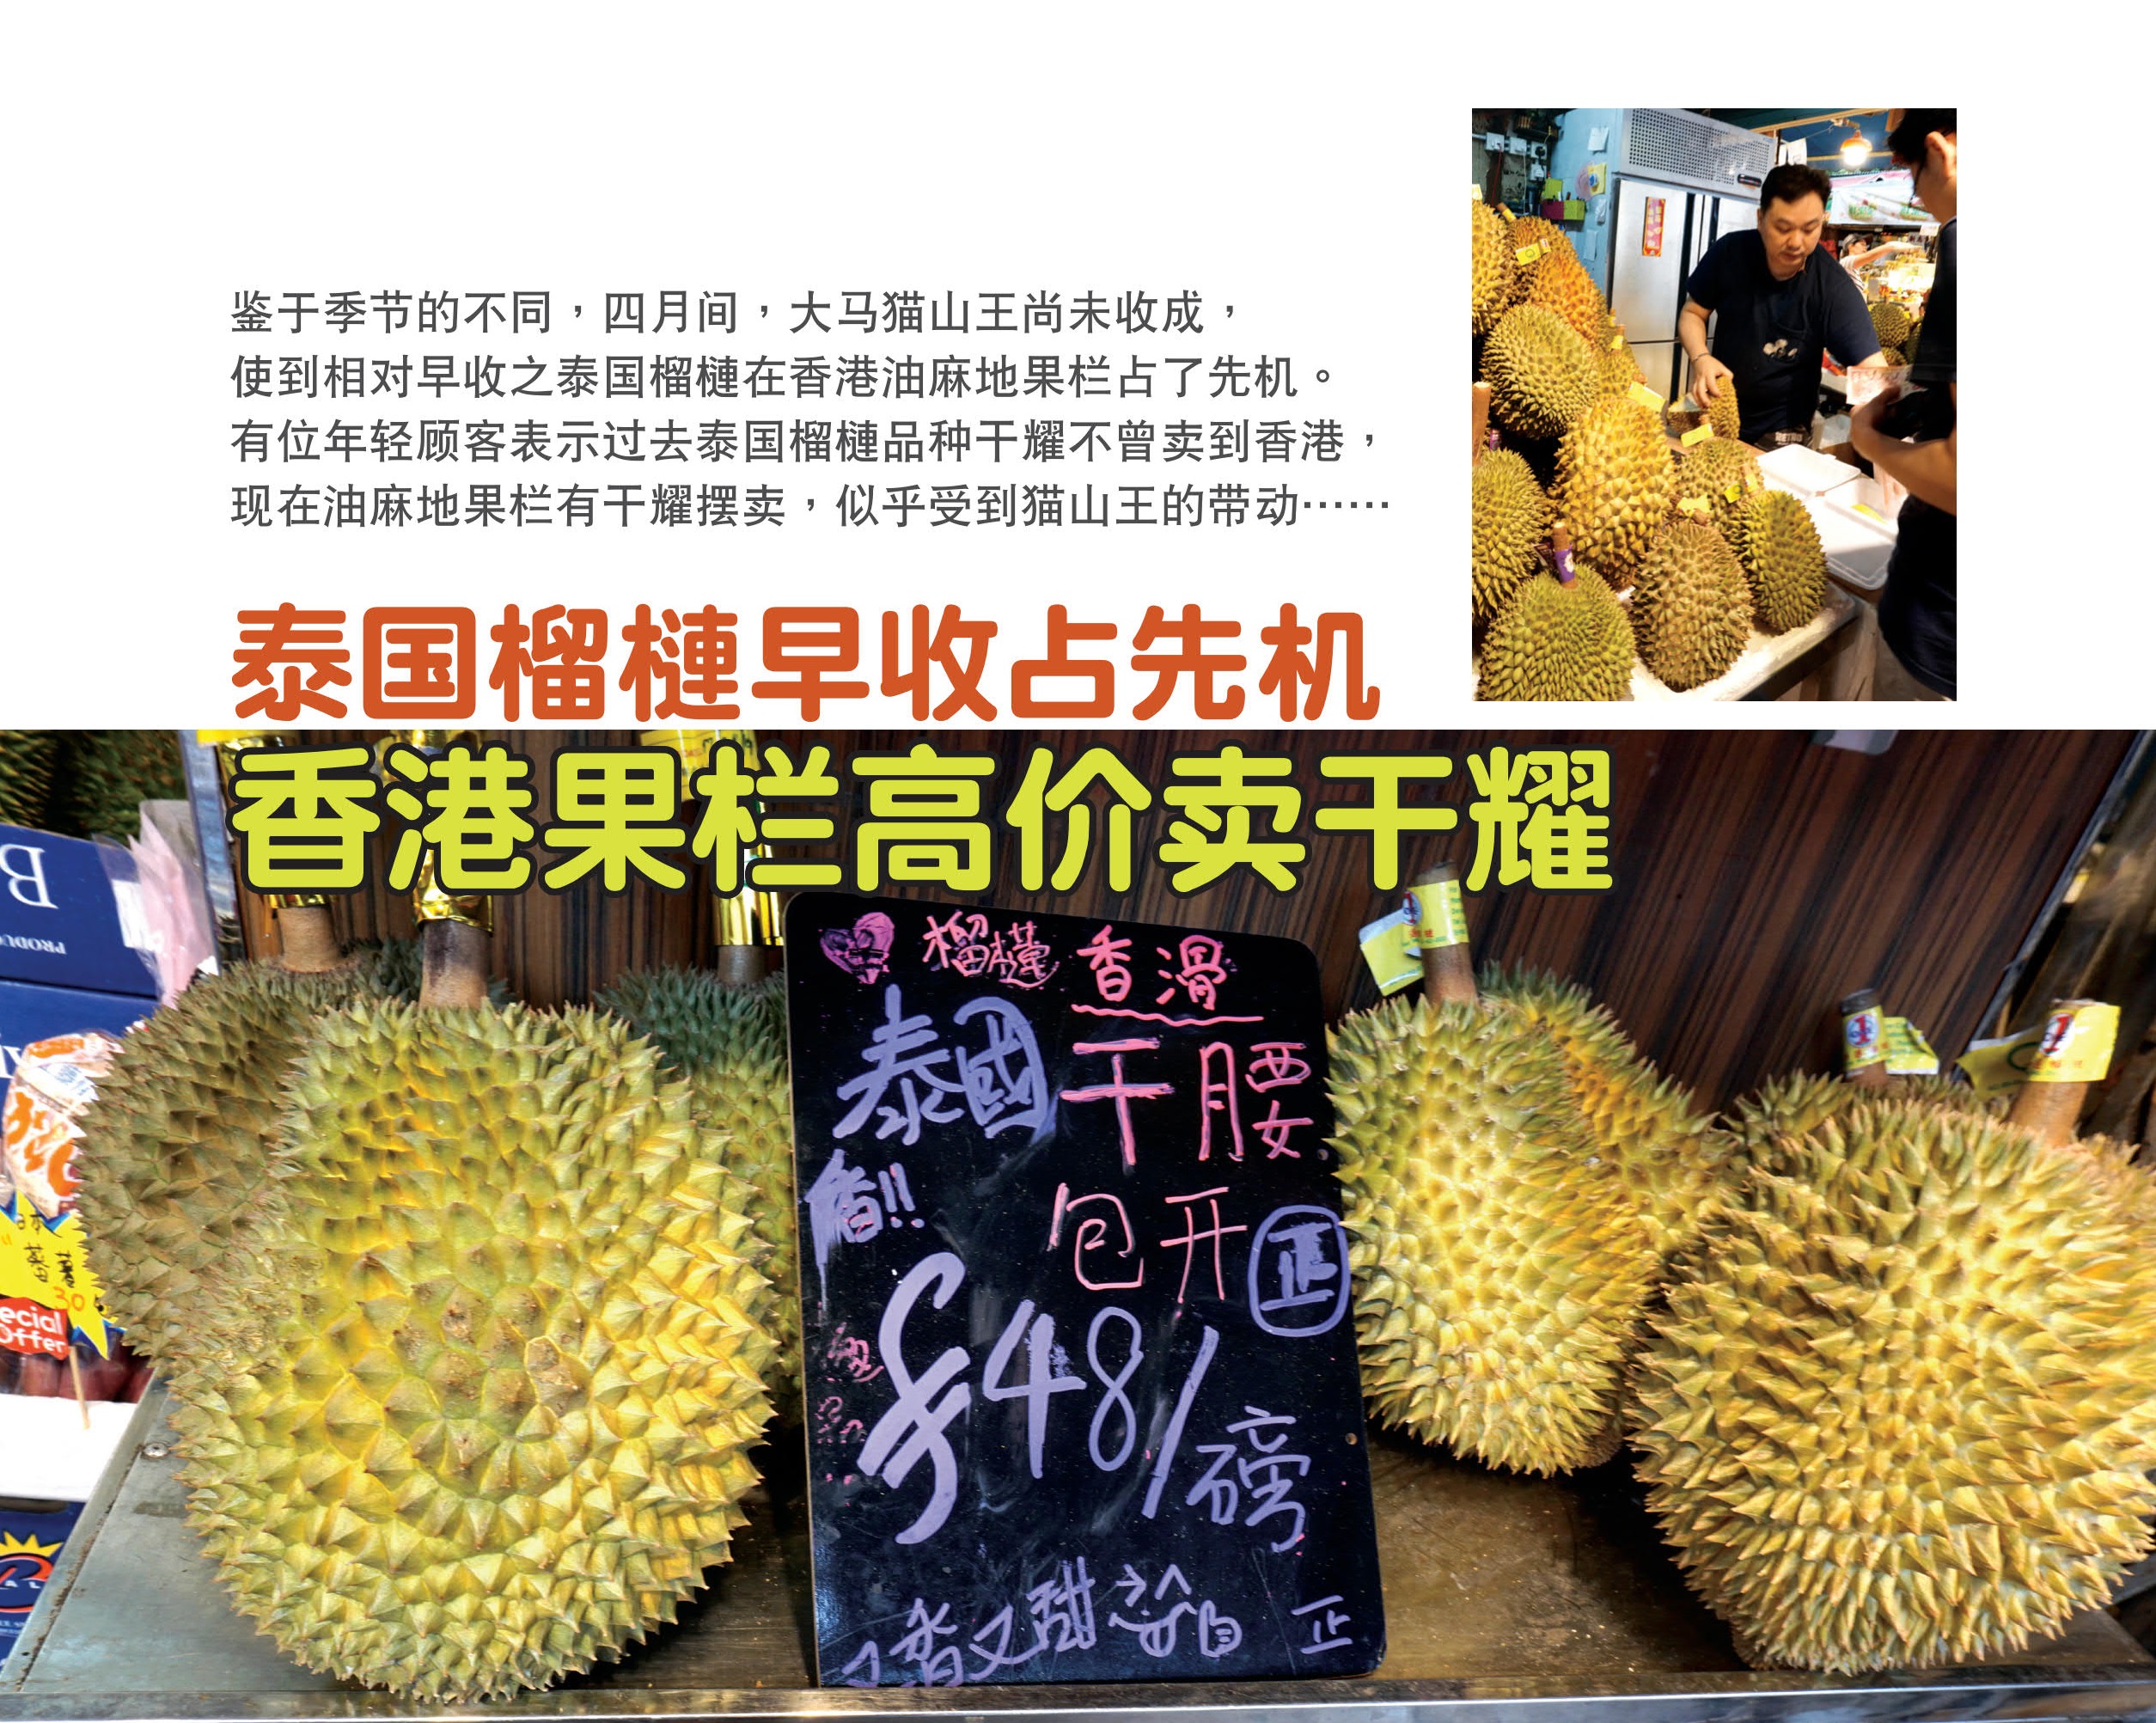 泰国榴梿早收占先机 香港果栏高价卖干耀 - 农牧世界